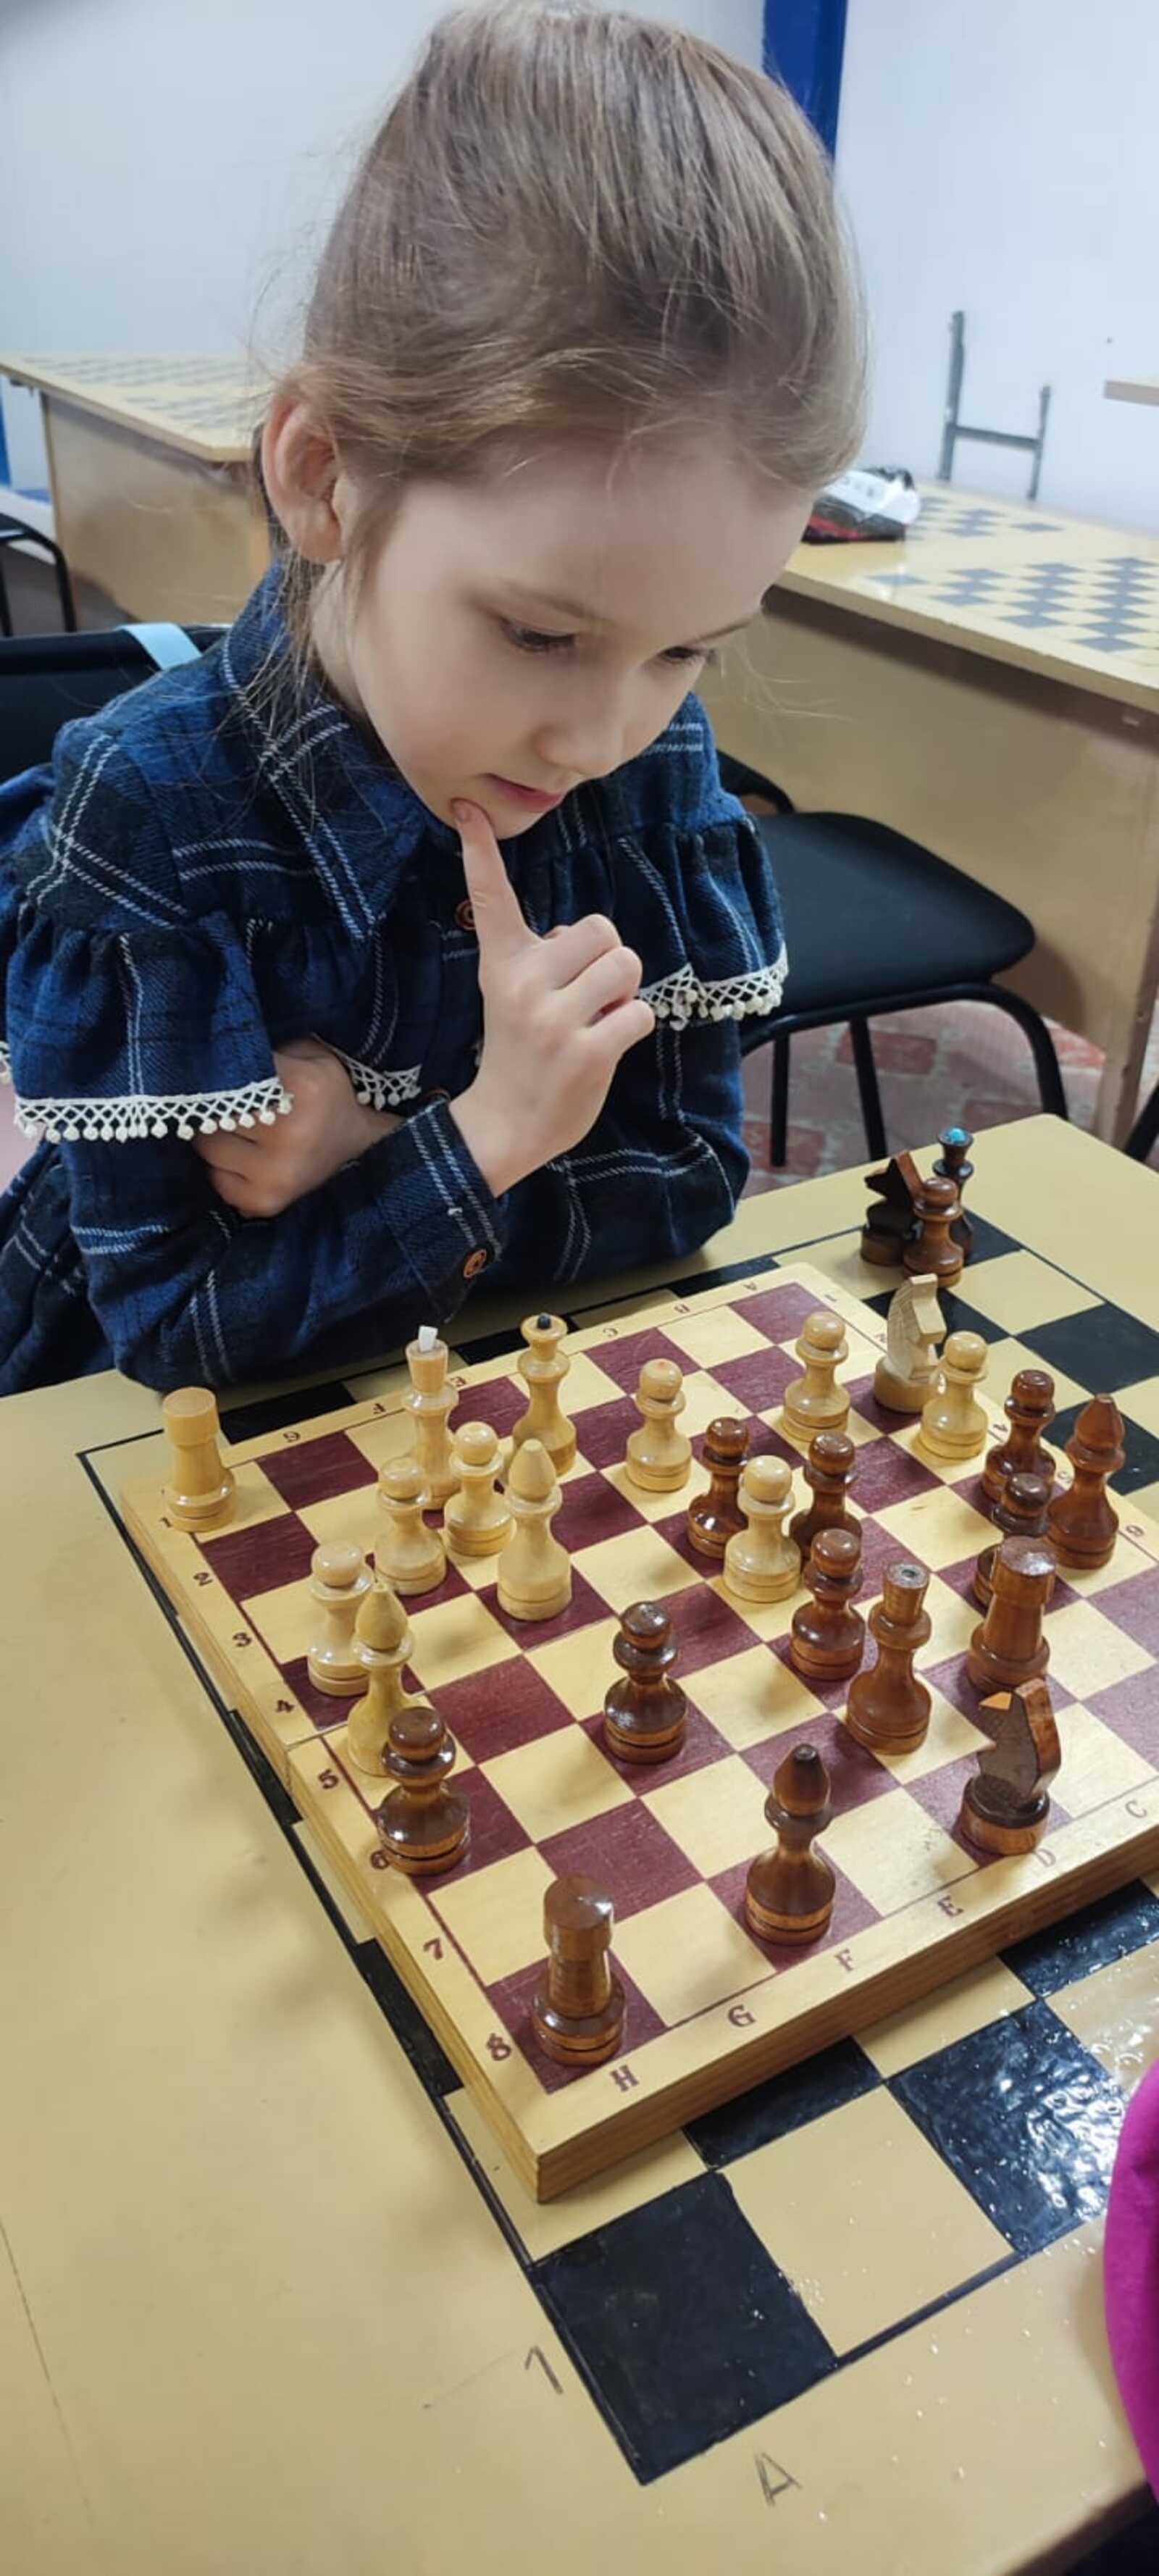 Шахматный турнир в с. Чекмагуш Республики Башкортостан